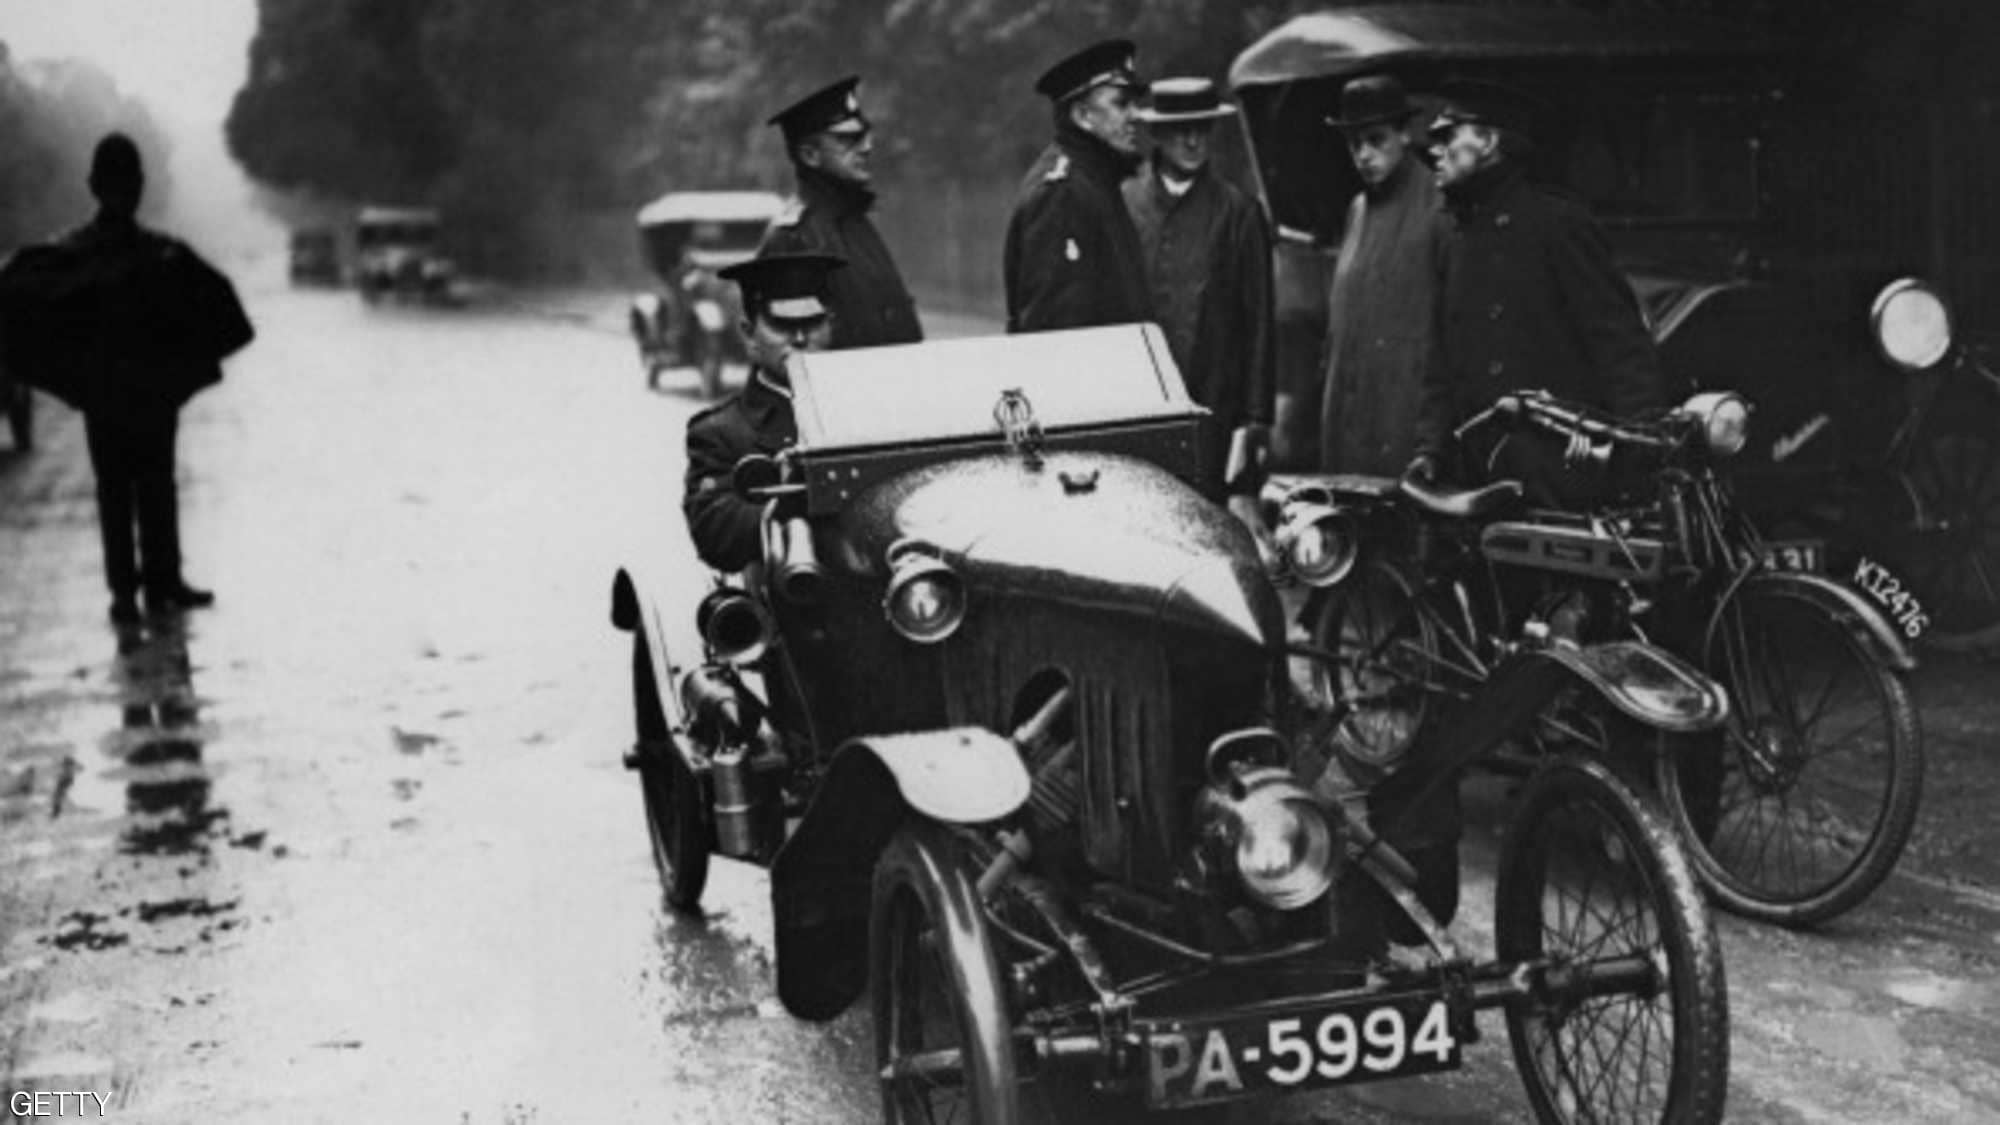 "بالصور" هذا ما بدت عليه السيارات قبل 100 عام من الآن 20